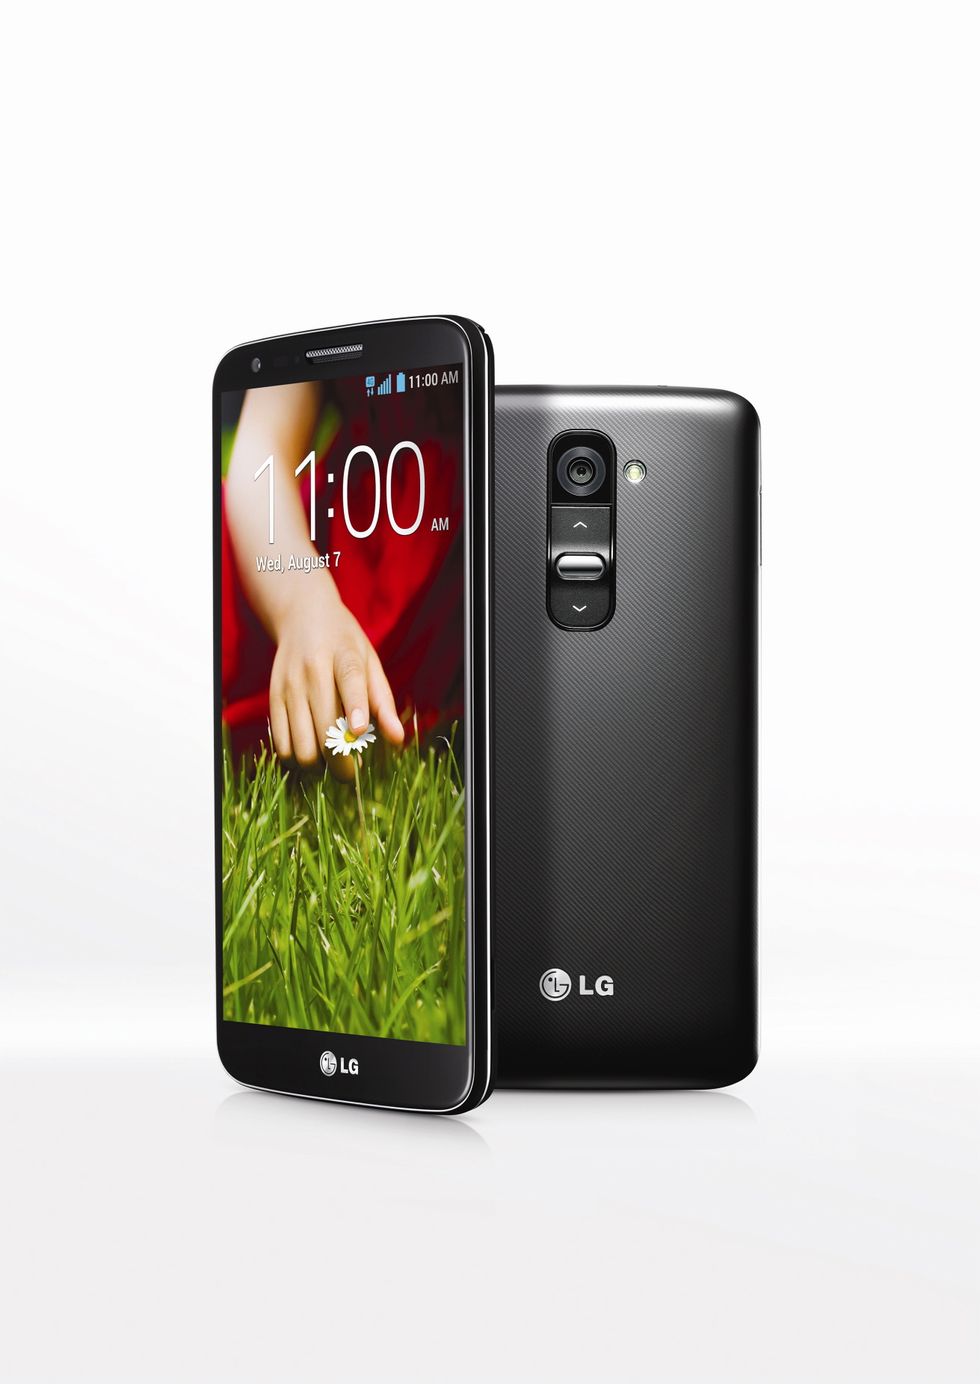 LG svela a New York il suo nuovo G2